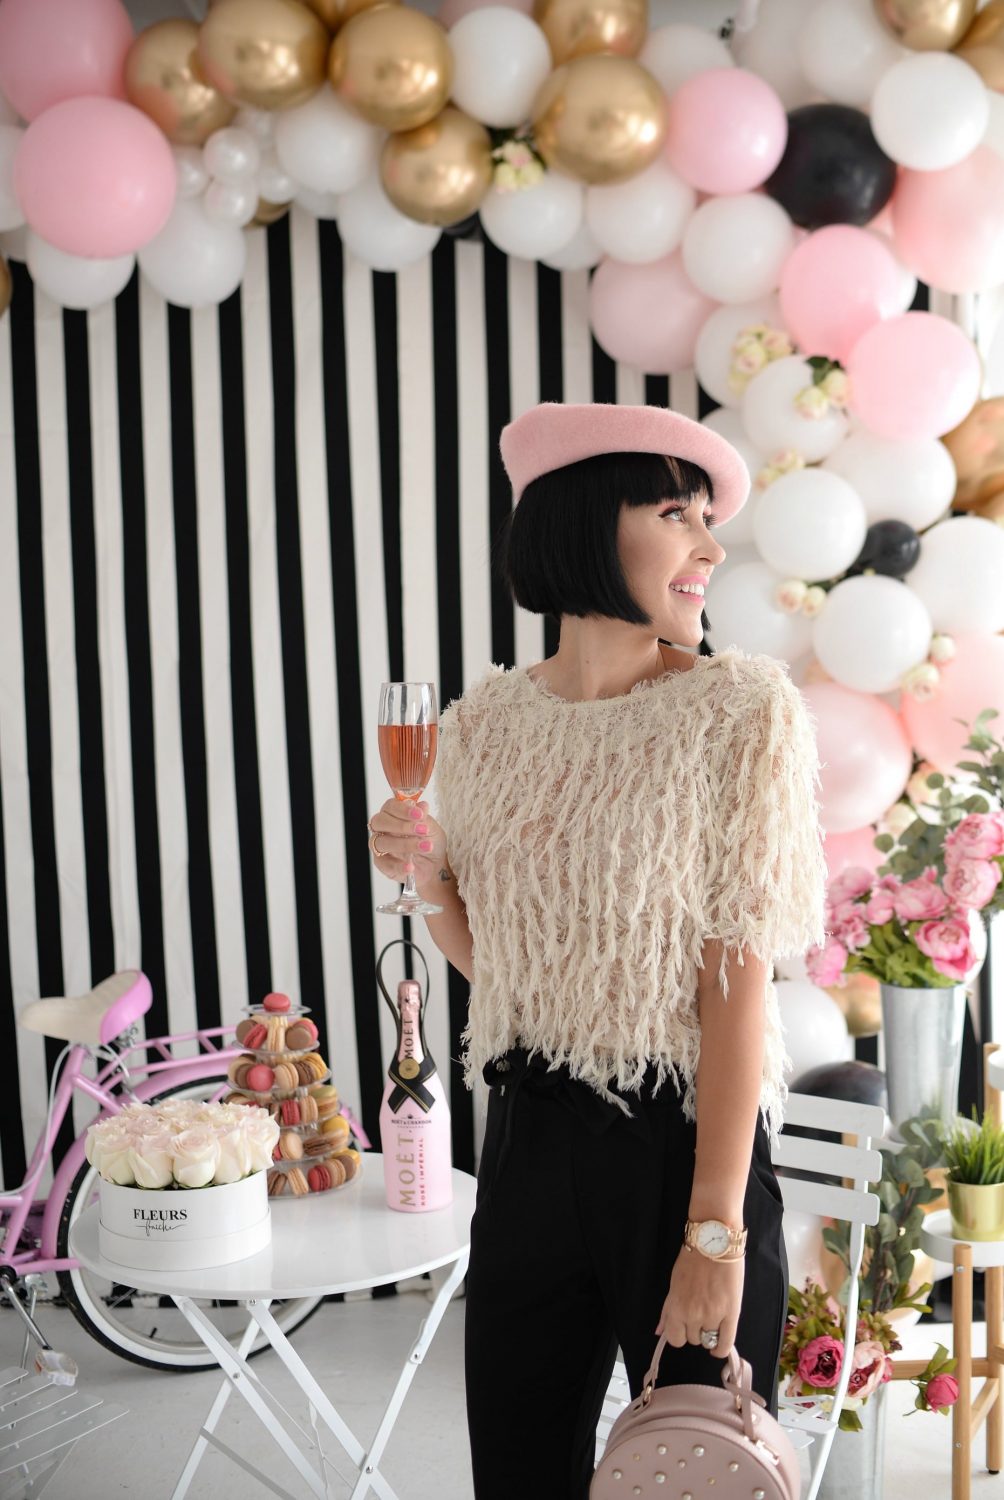 paris theme photoshoot, parisian fashion style (11) – The Pink Millennial